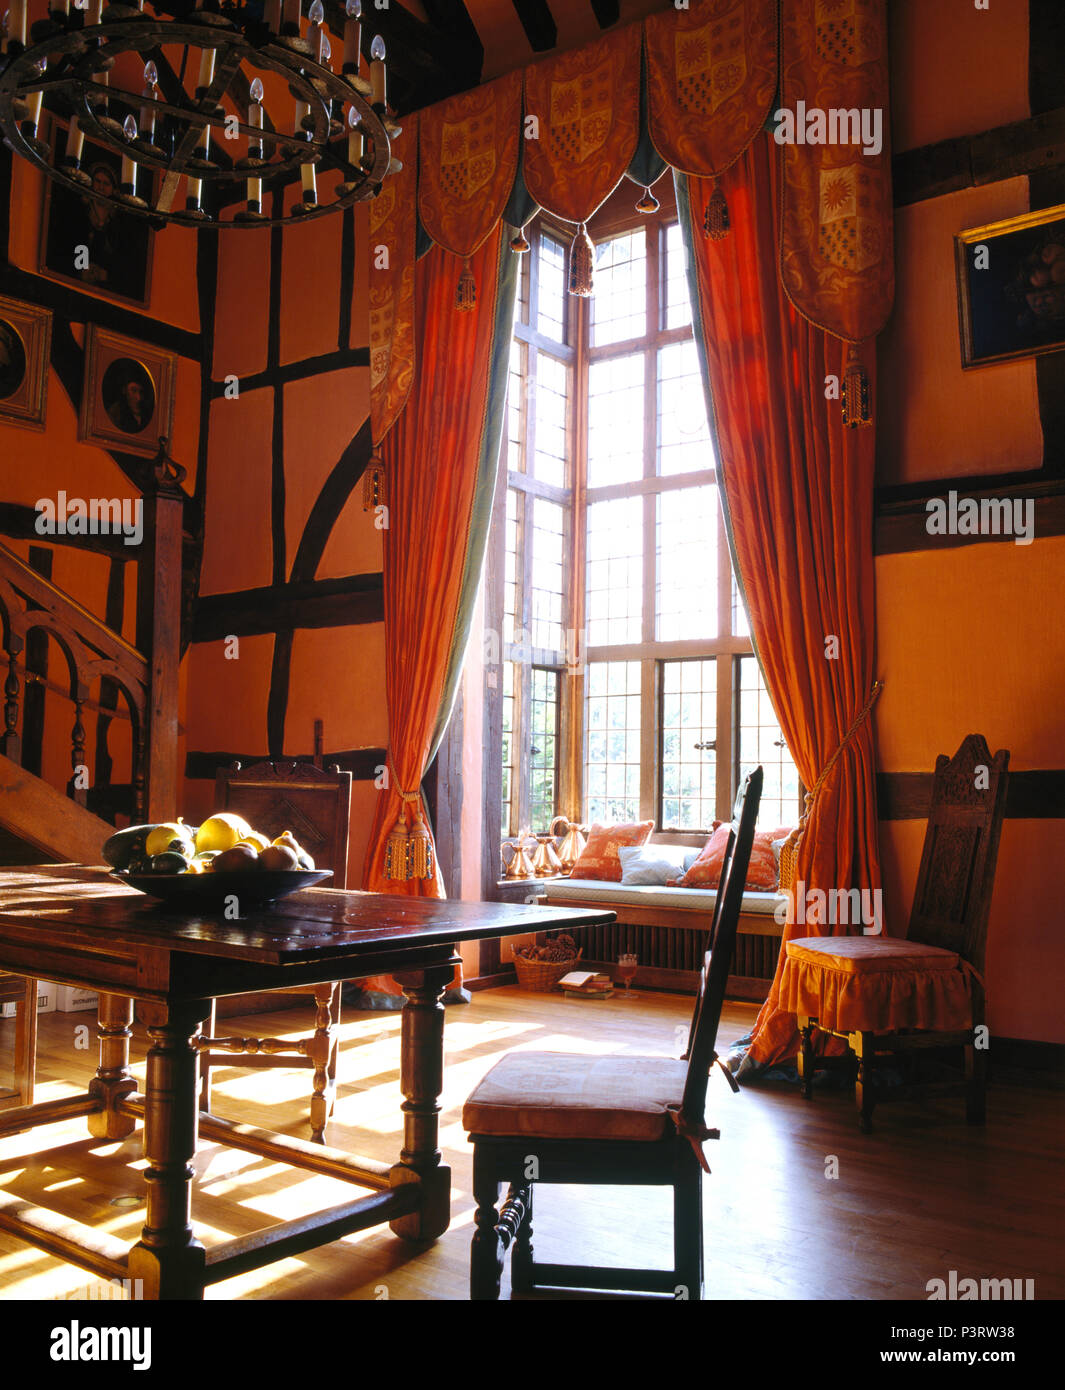 Rideaux rouge-orange à hautes fenêtres dans grande maison de campagne salle  à manger avec meubles anciens Photo Stock - Alamy